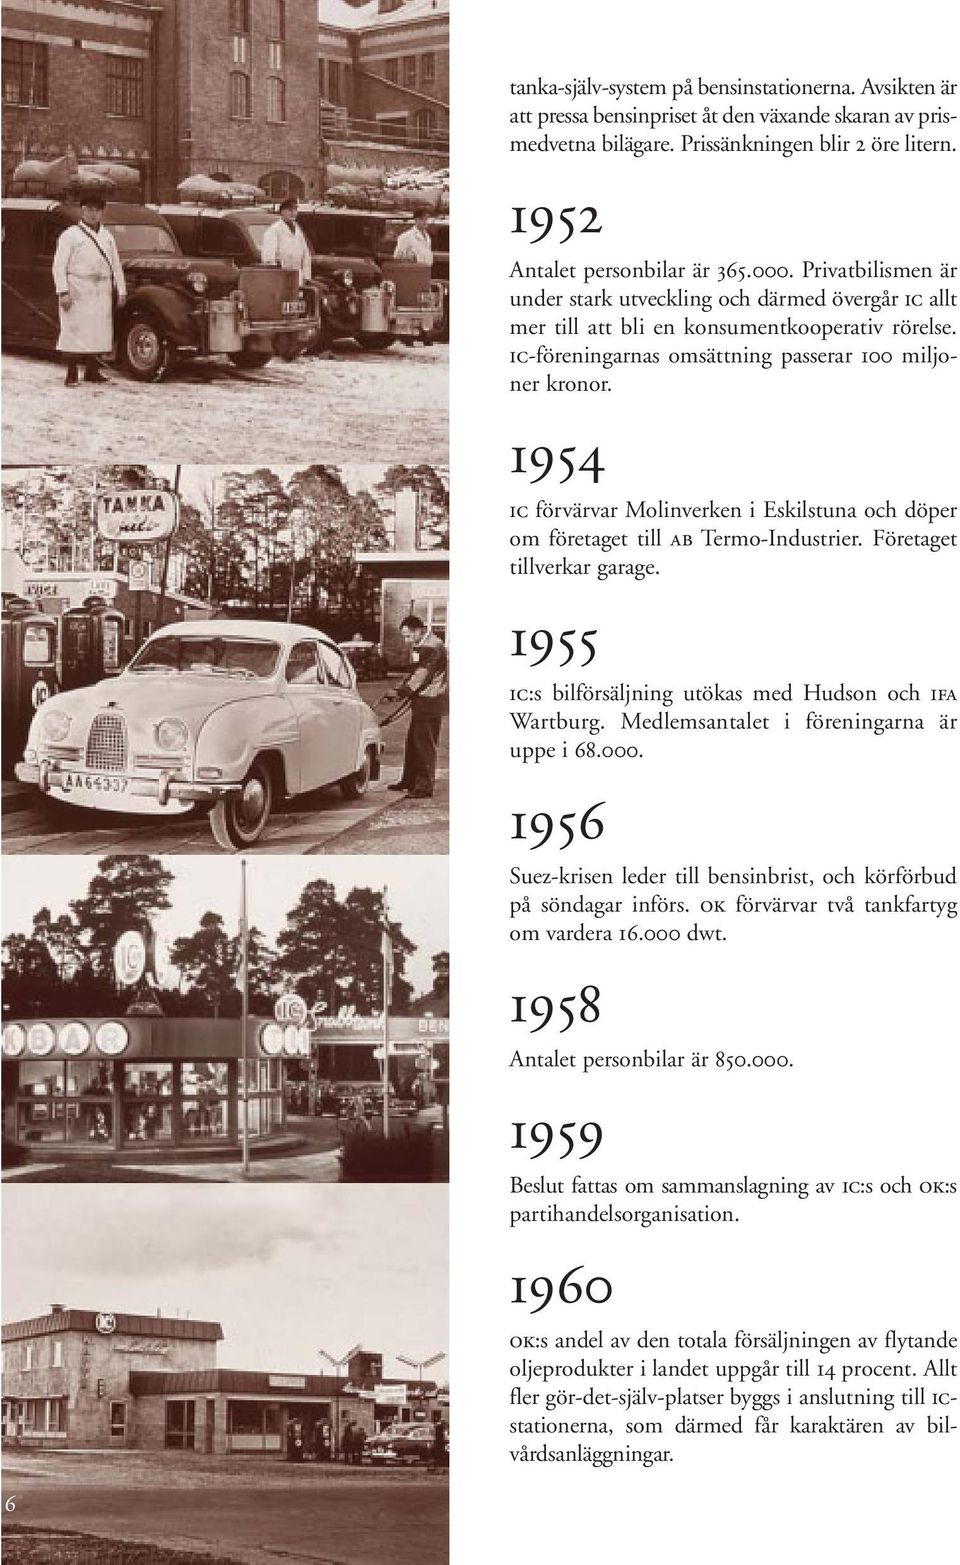 1954 ic förvärvar Molinverken i Eskilstuna och döper om företaget till ab Termo-Industrier. Företaget tillverkar garage. 1955 ic:s bilförsäljning utökas med Hudson och ifa Wartburg.